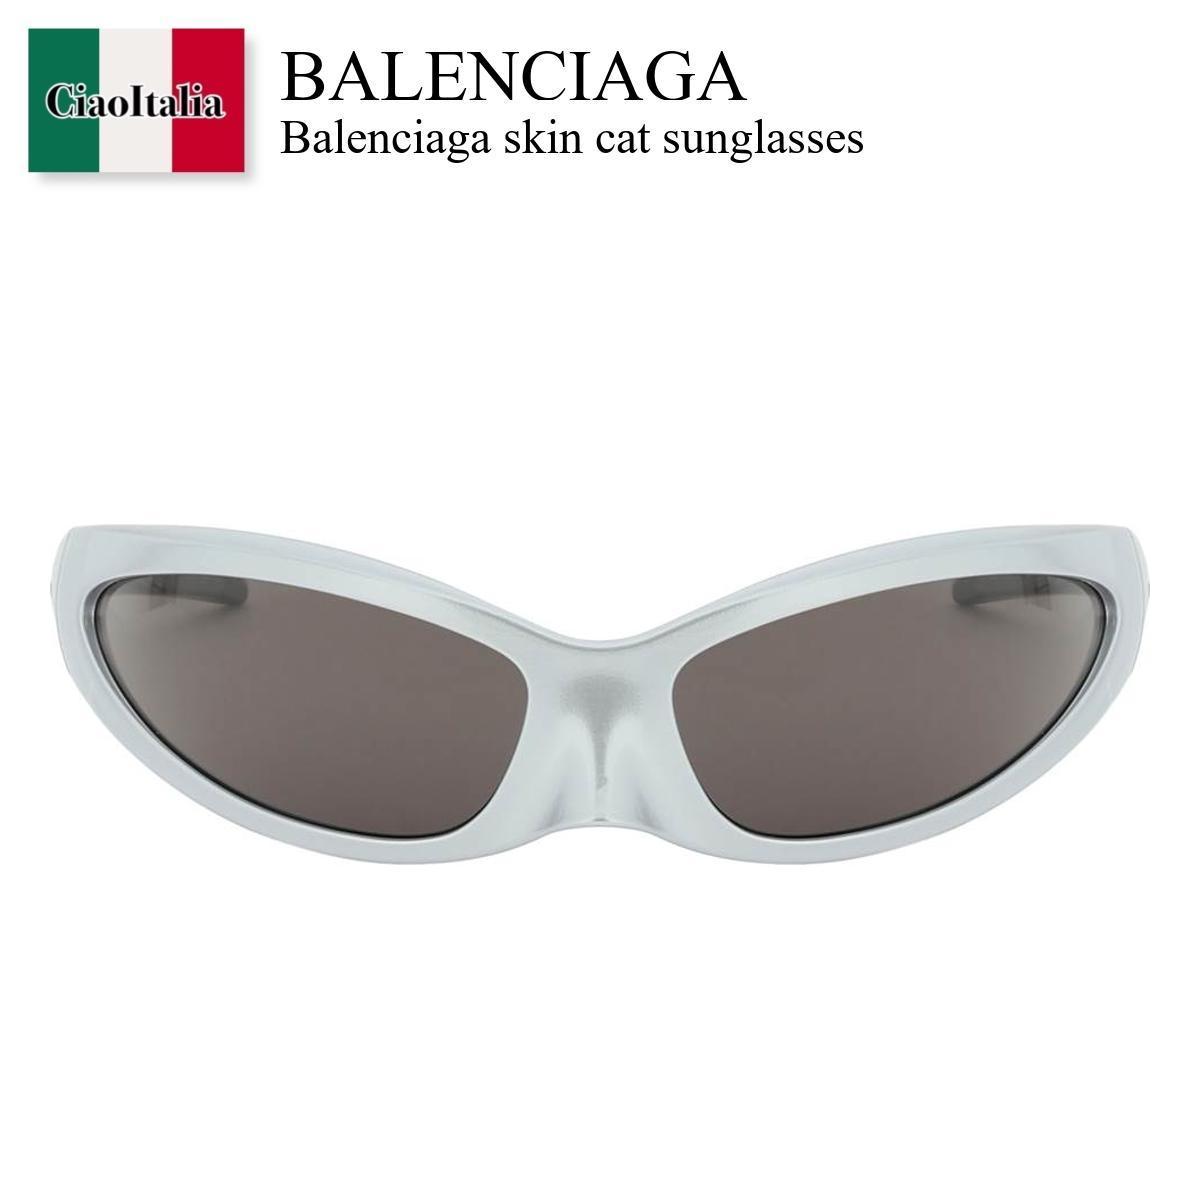 バレンシアガ / Balenciaga Skin Cat Sunglas